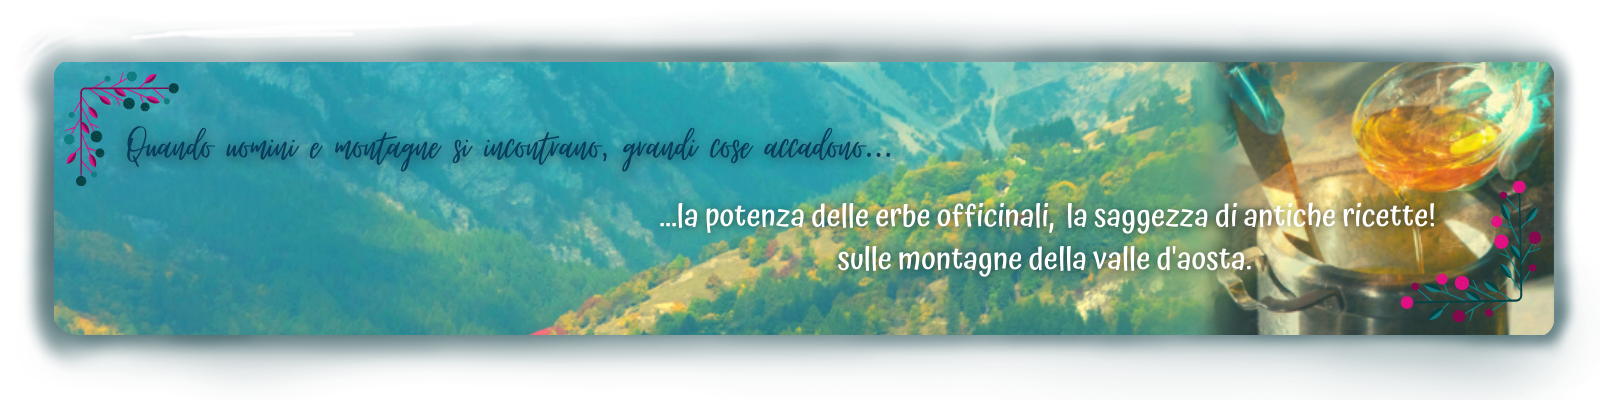 Immagine con Montagne con scritta "Quando uomini e montagne si incontrano, grandi cose accadono...la potenza delle erbe officinali, la saggezza di antiche ricette! Sulle montagne della Valle d'Aosta"